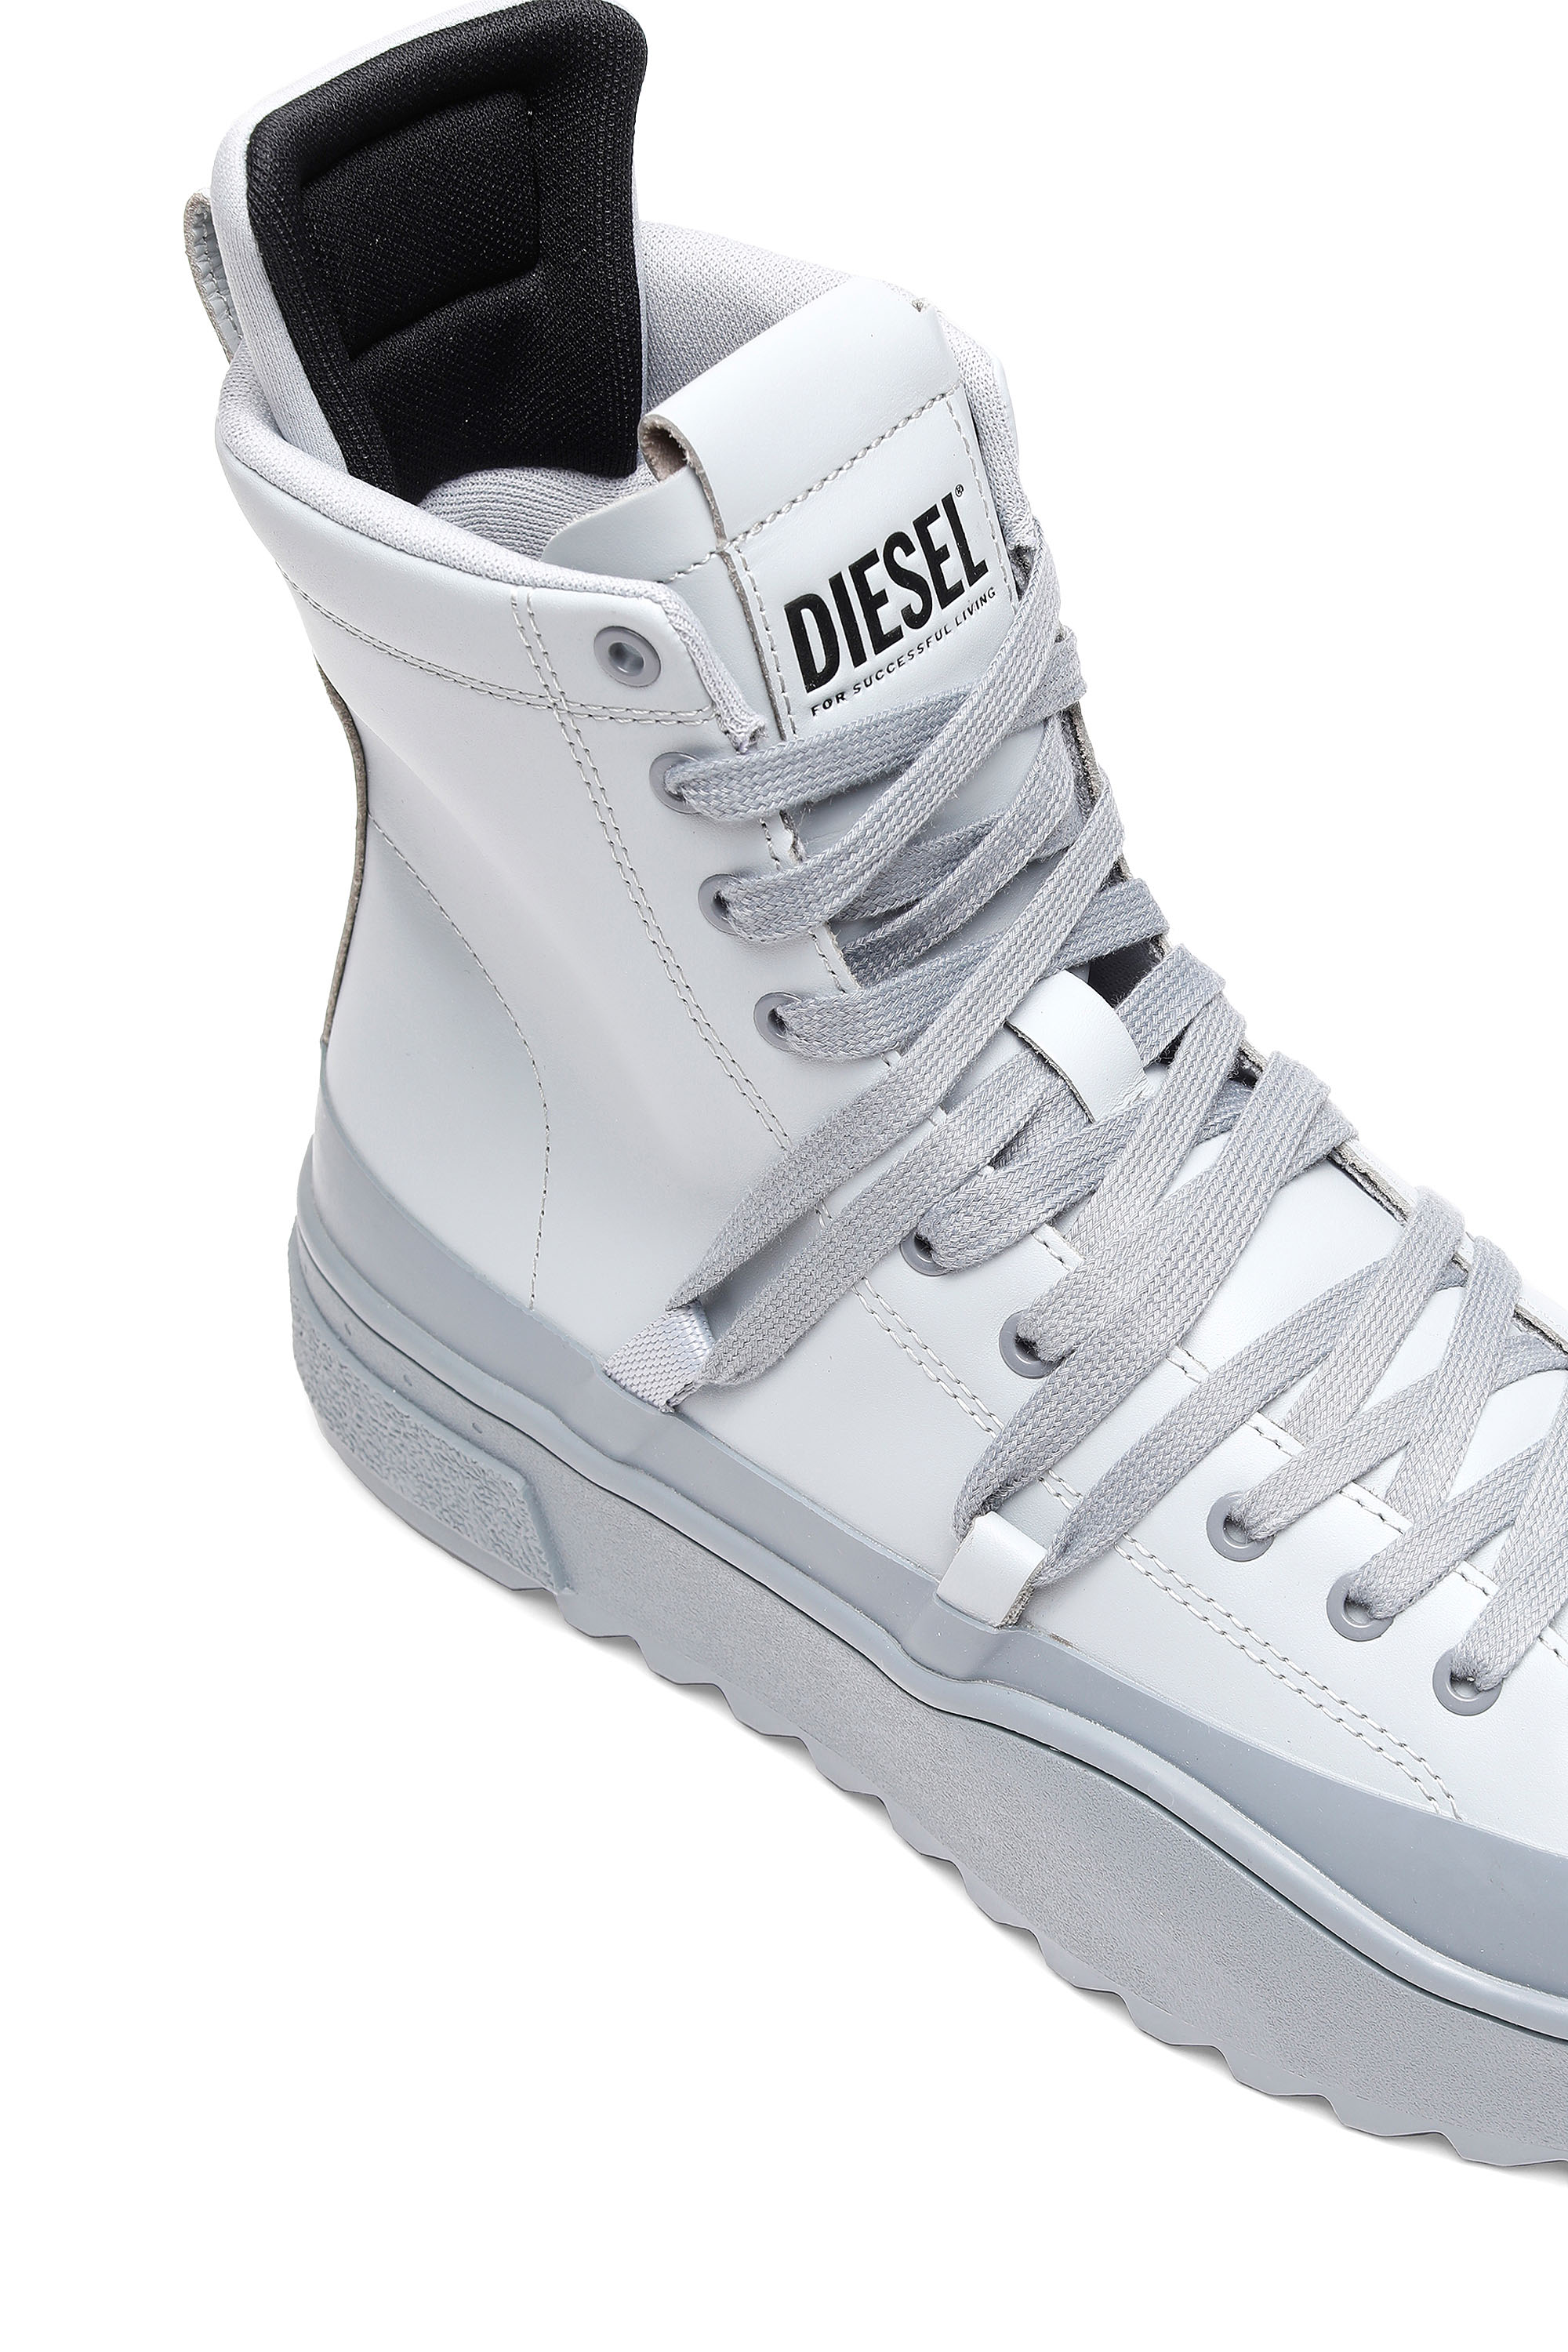 Diesel - H-SHIKA HB, White/Grey - Image 4